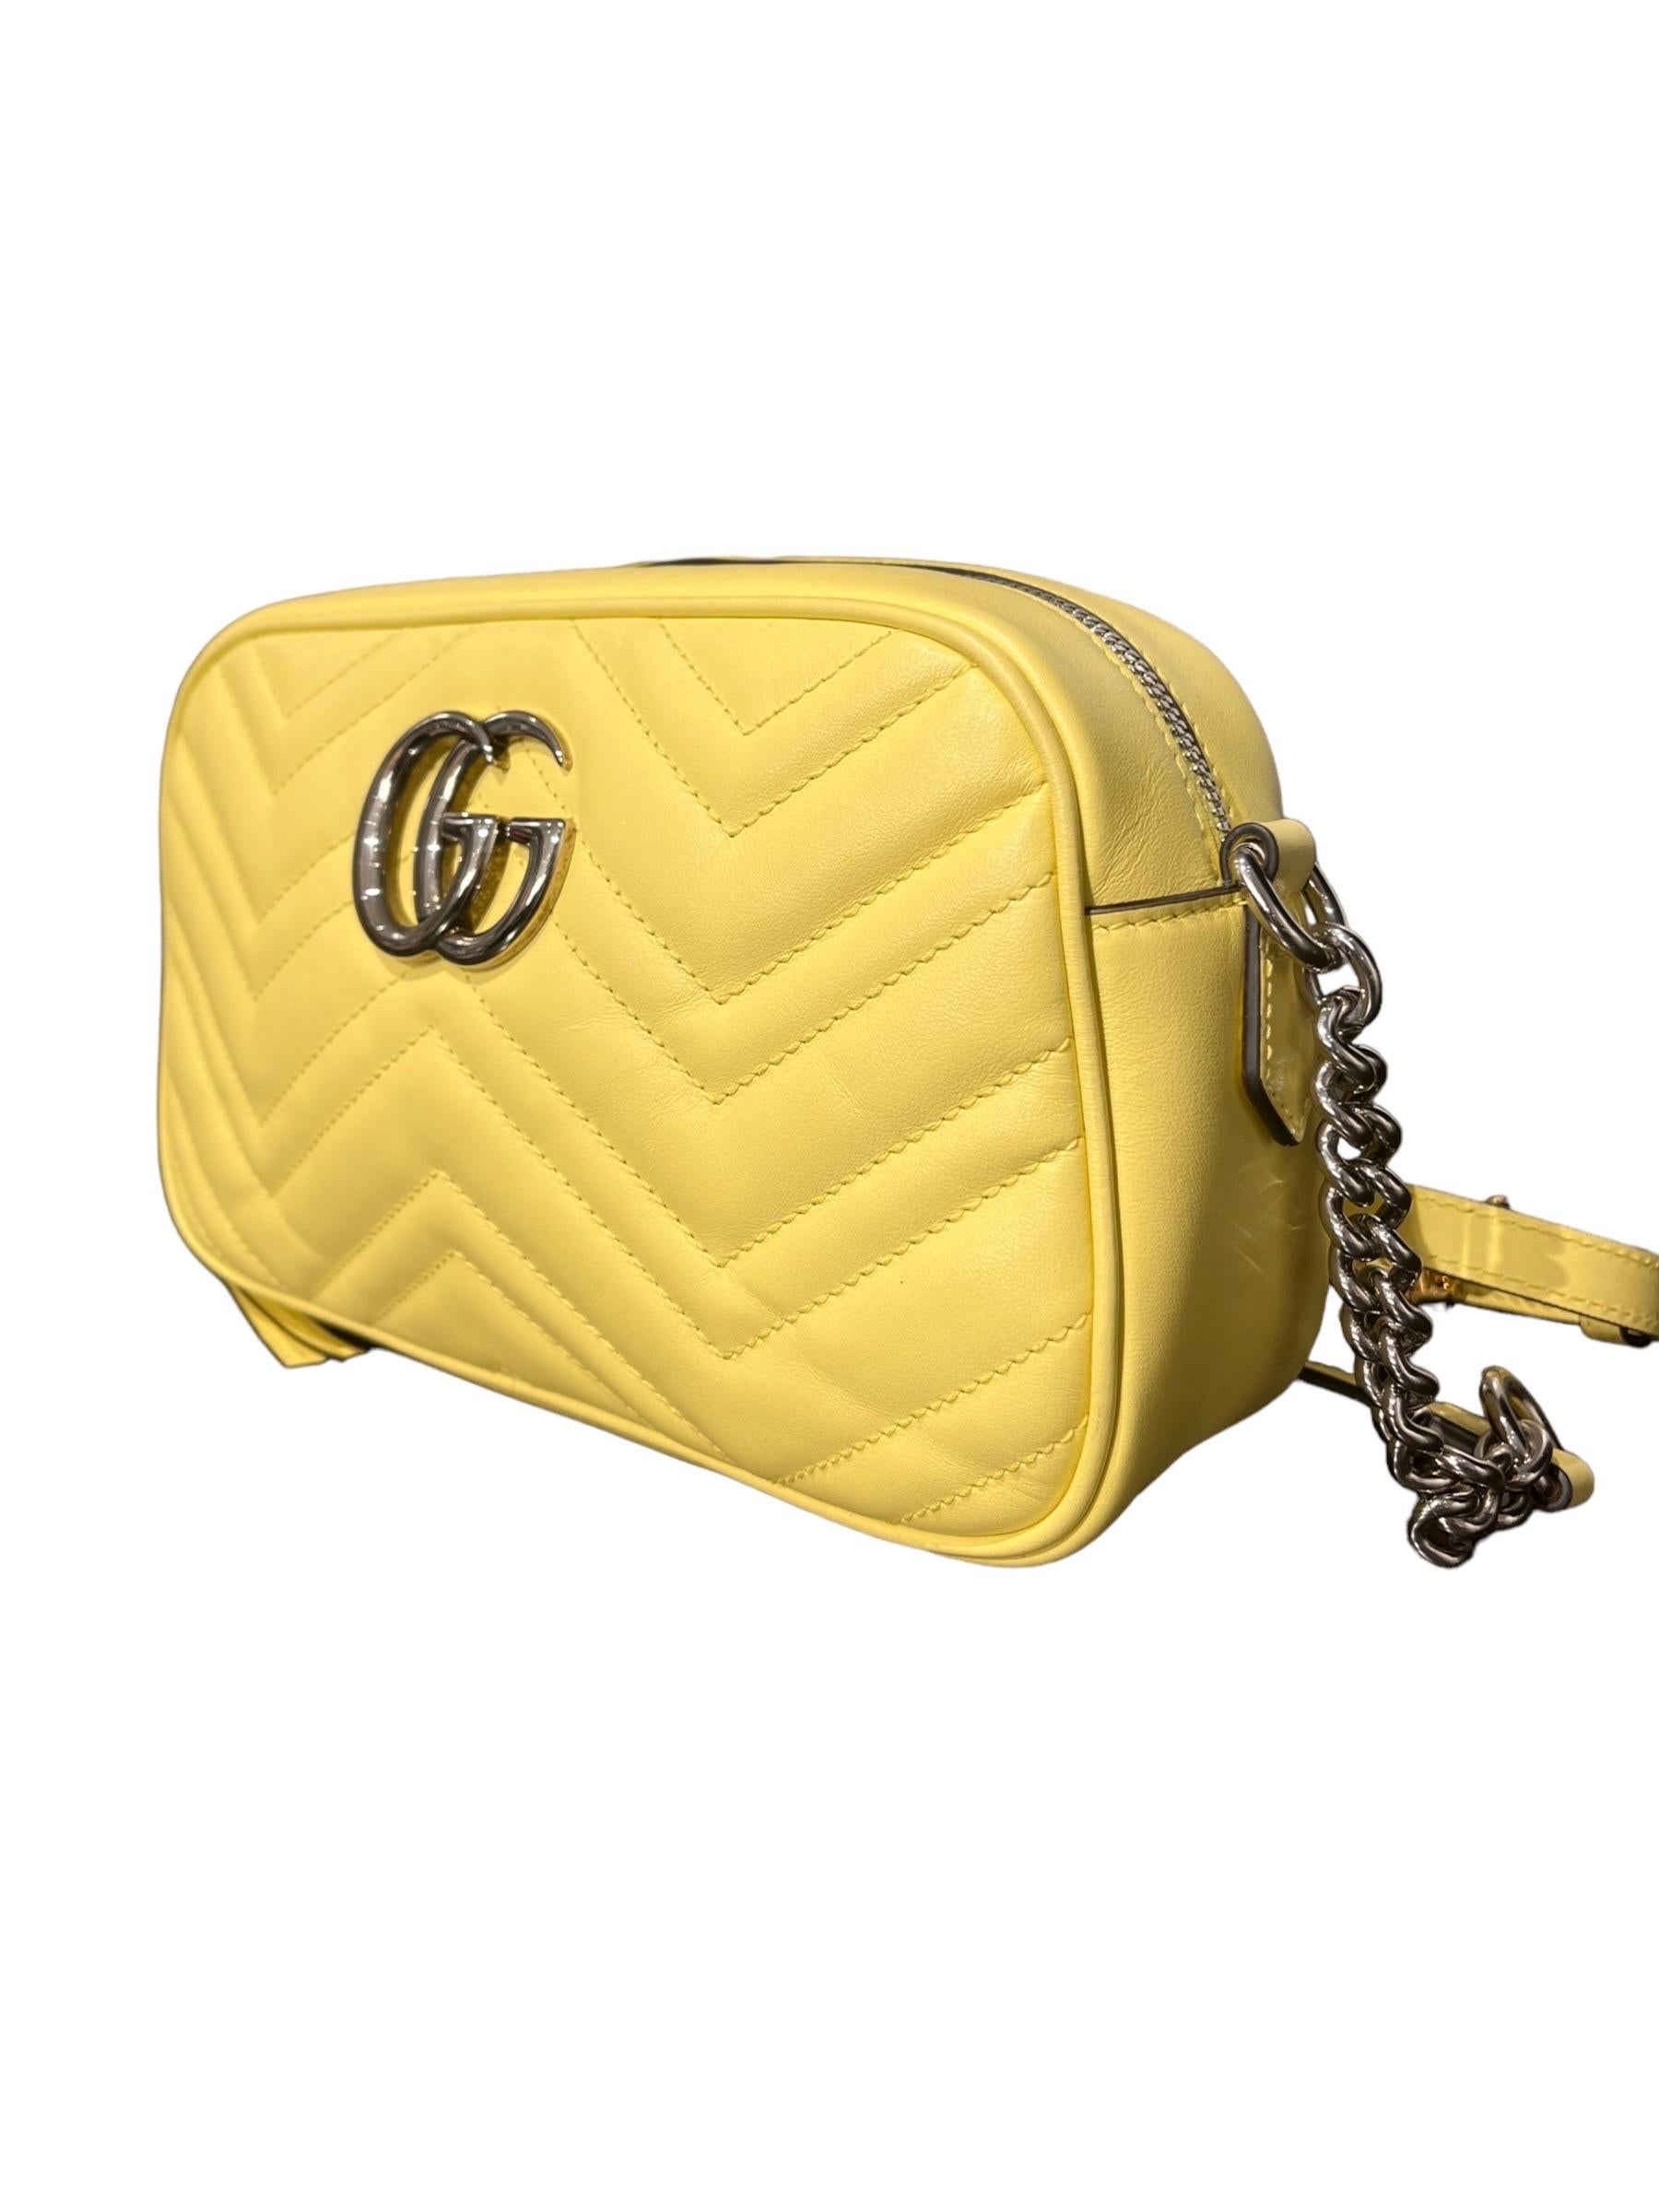 Women's Borsa a Tracolla Gucci Camera Bag Marmont Giallo Pastel